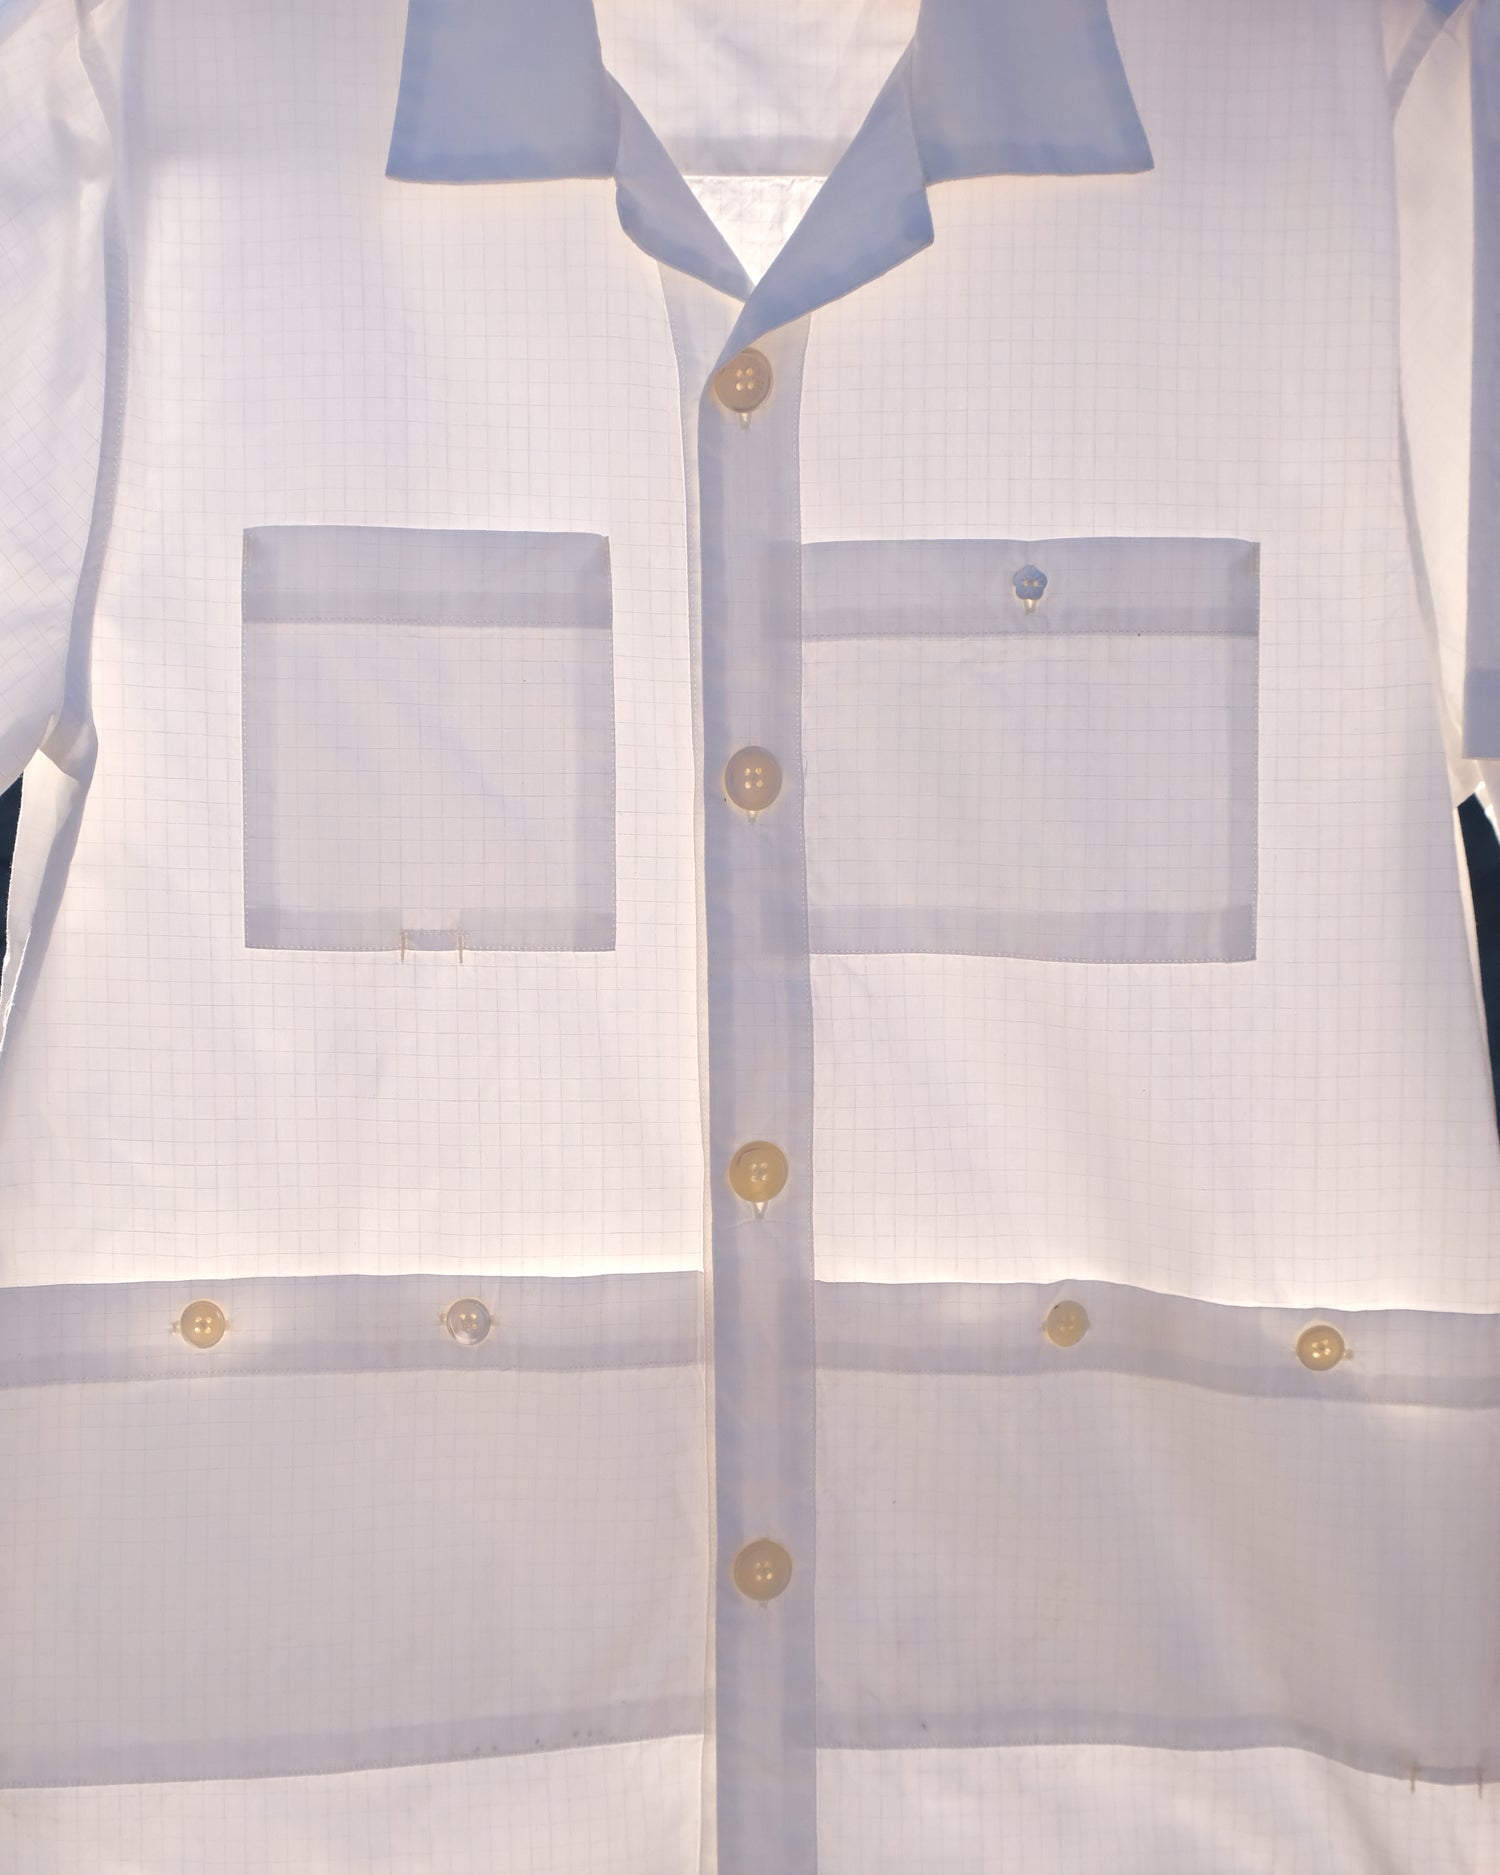 Earthworm Long Sleeve Shirt (White)